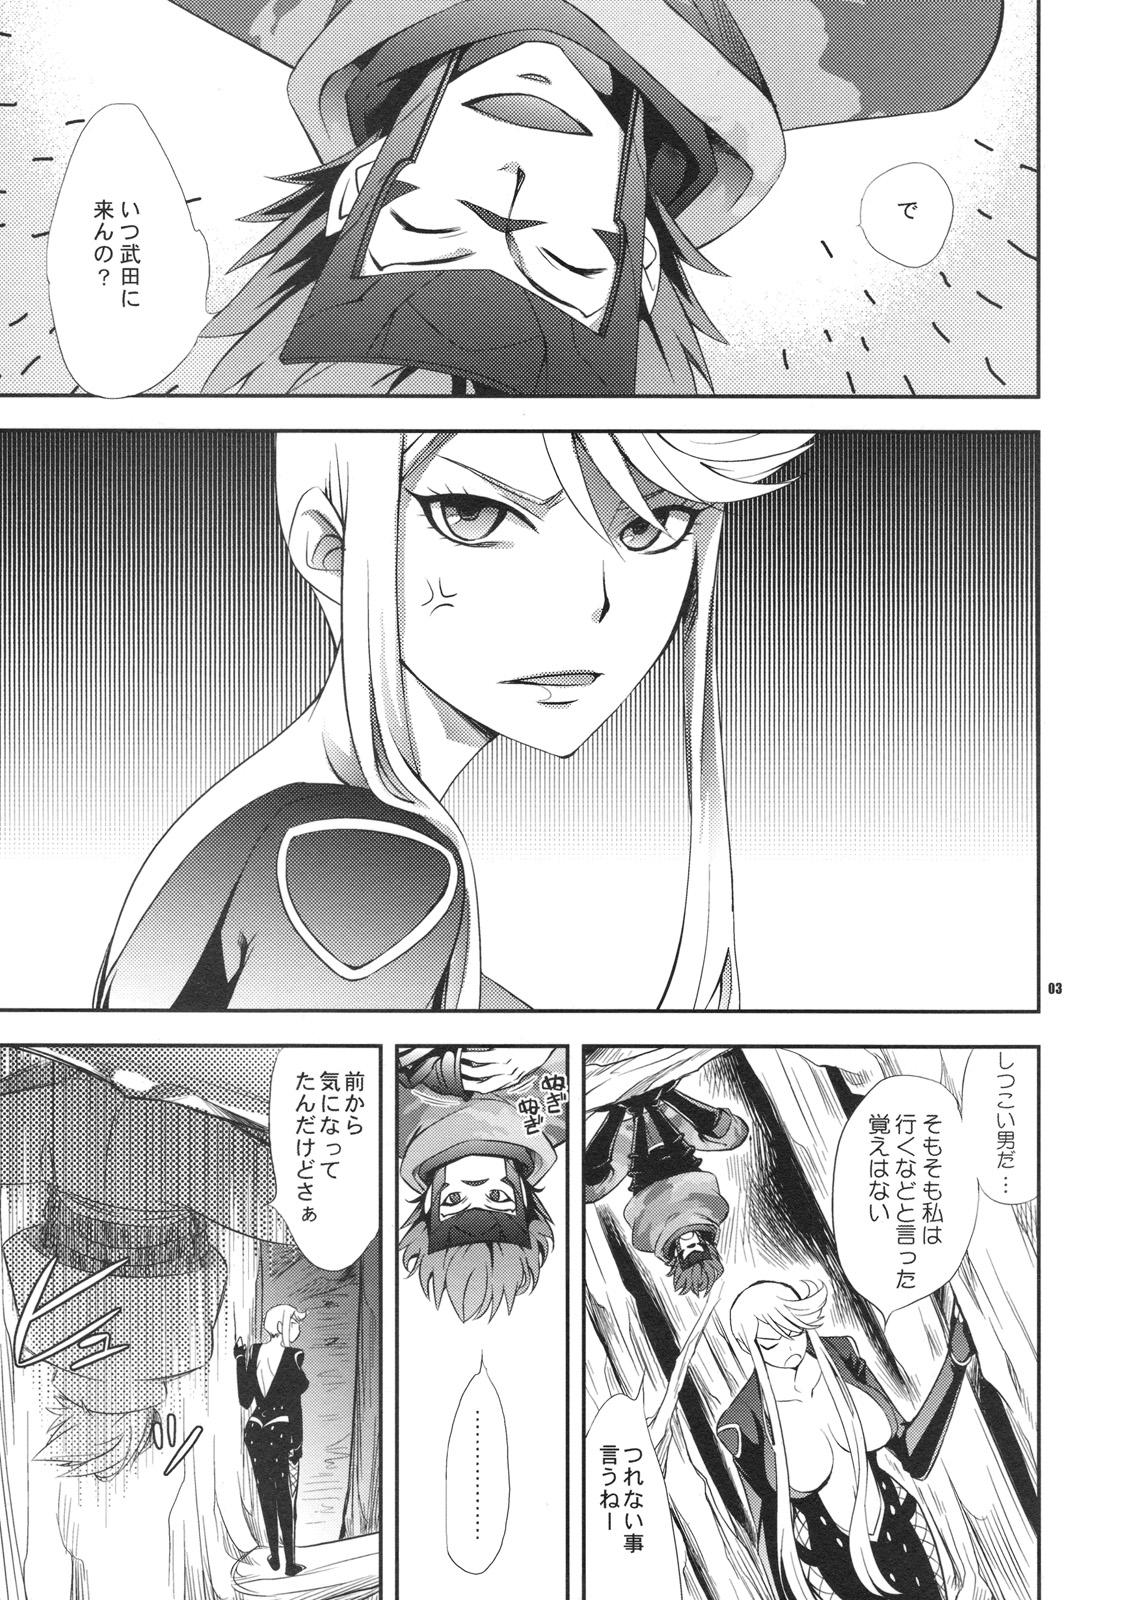 Piroca Oosame Kudasai Kenshin-sama! - Sengoku basara Gayclips - Page 2